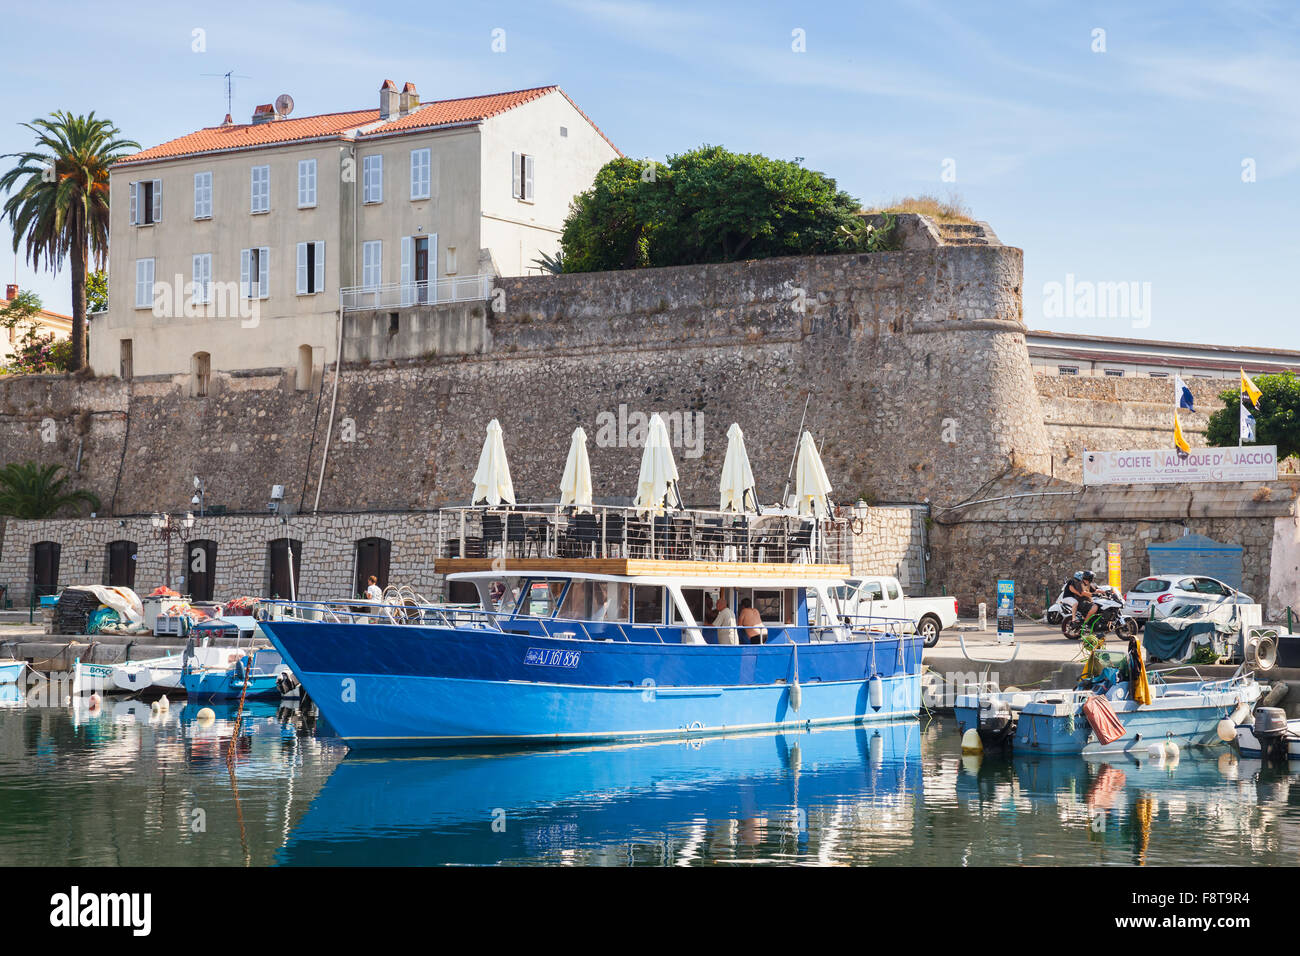 Ajaccio, France - 29 juin 2015 : des bateaux amarrés dans le port d'Ajaccio, Corse, France Banque D'Images